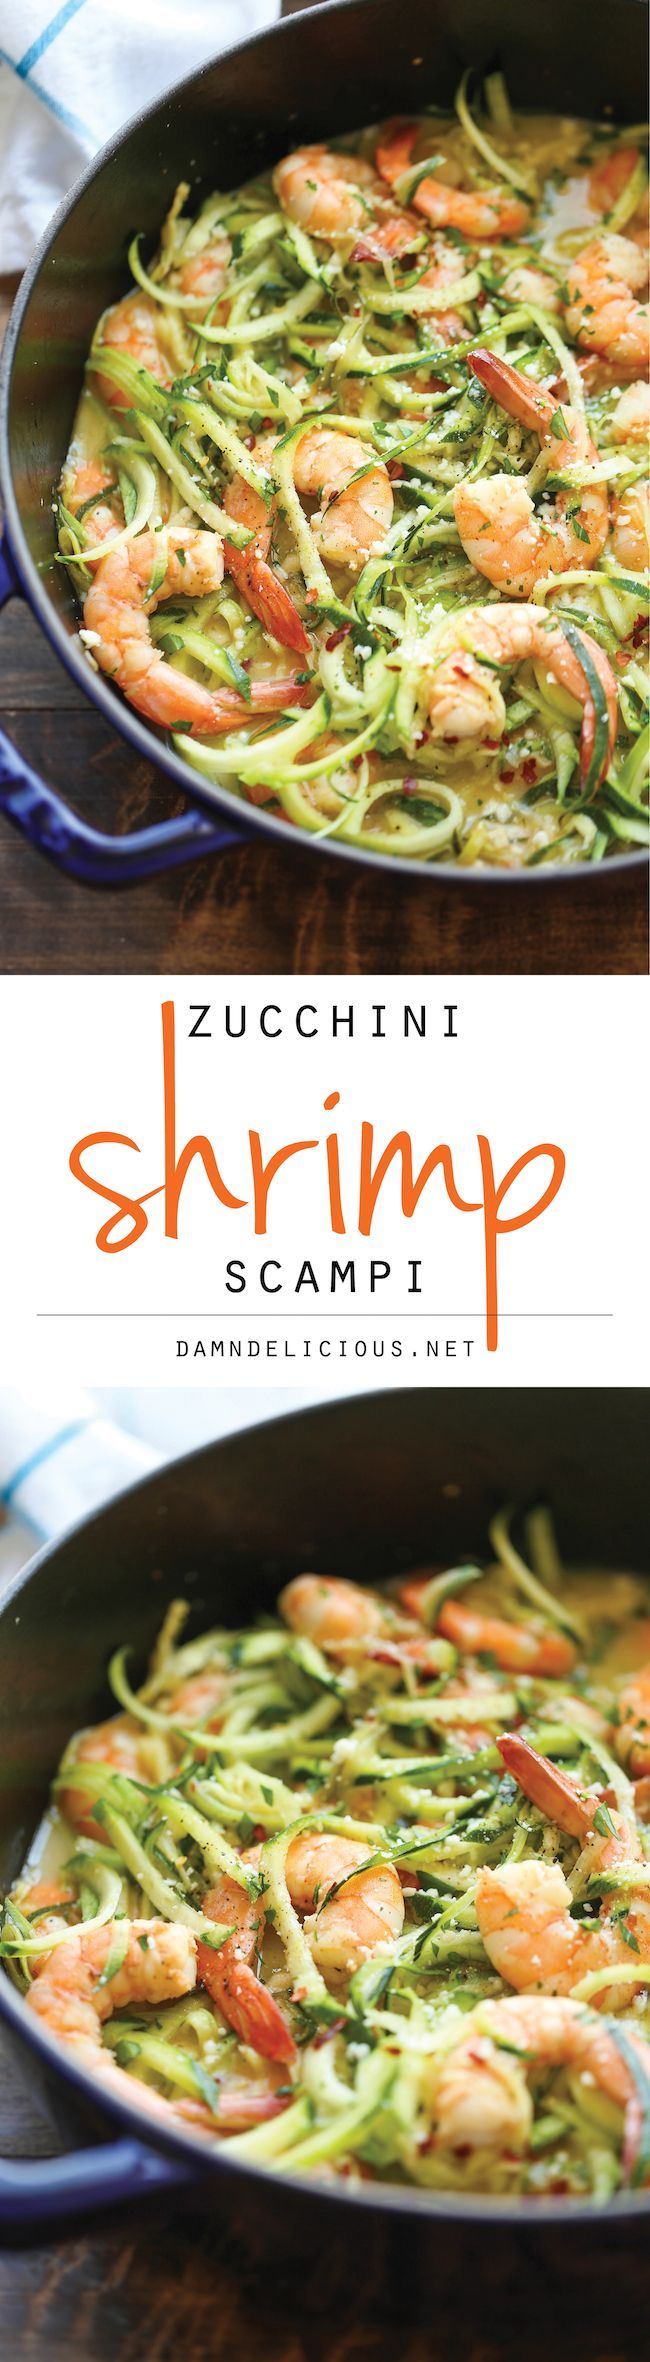 Zucchini Shrimp Scampi – Traditiona